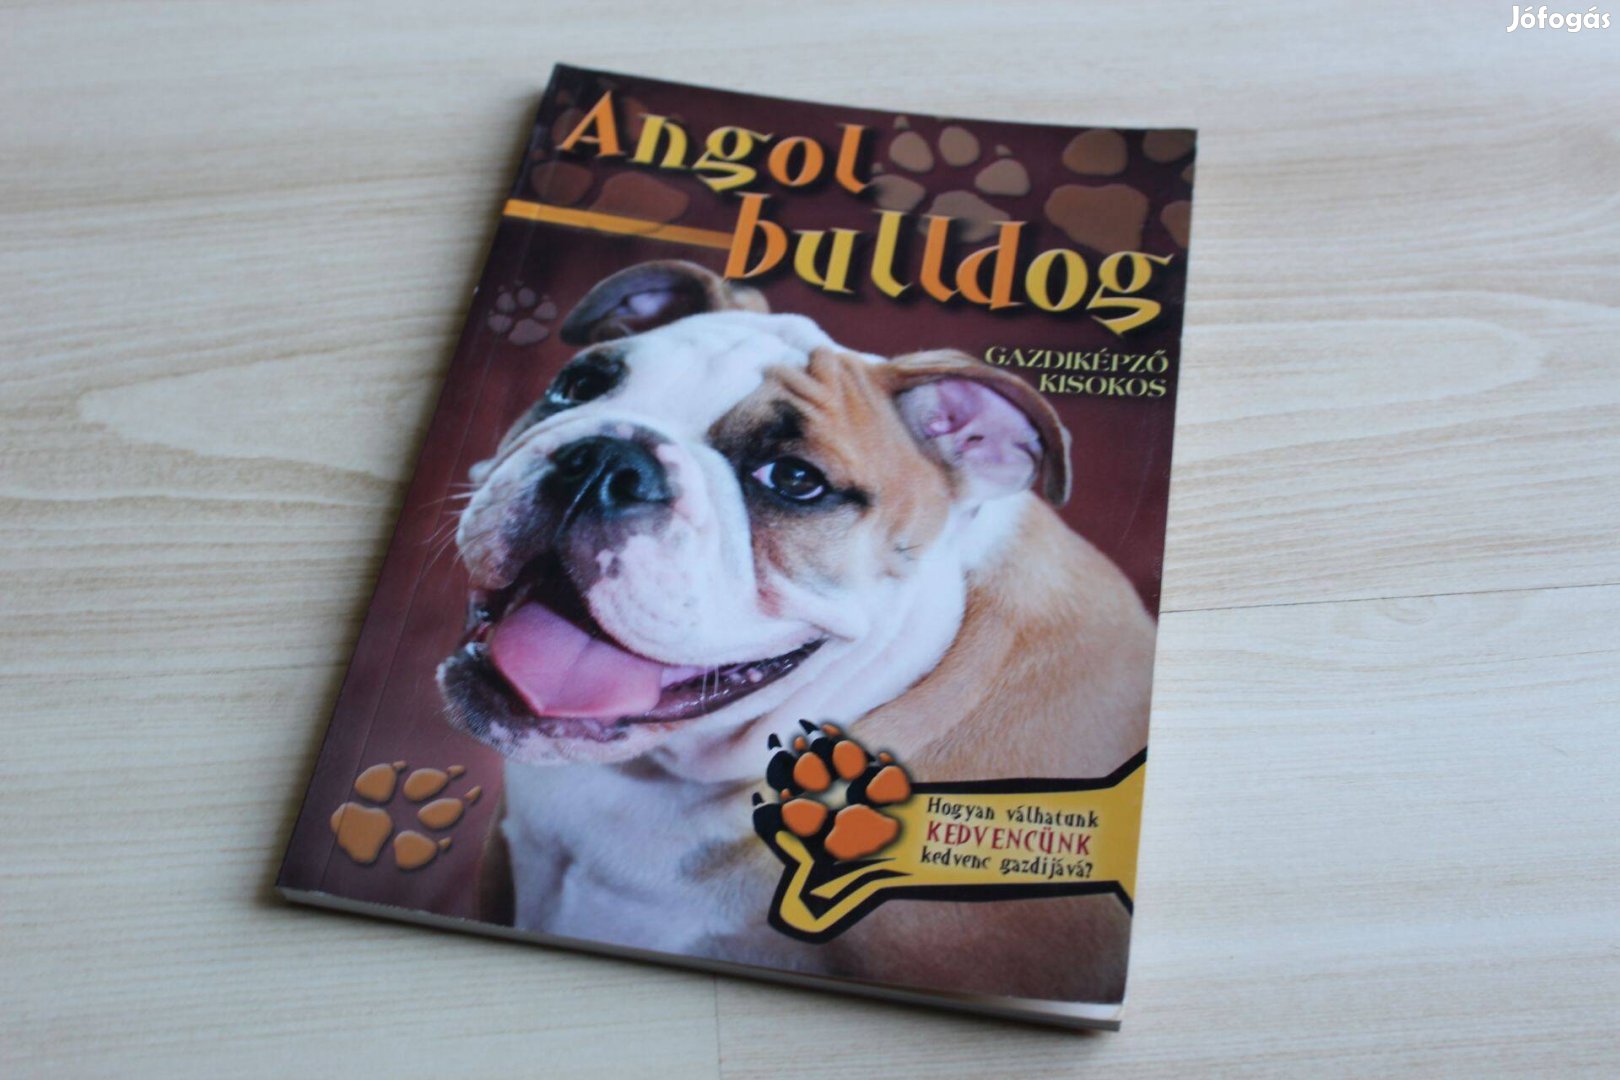 Állattartók kézikönyve - Gazdiképző kisokos Angol bulldog